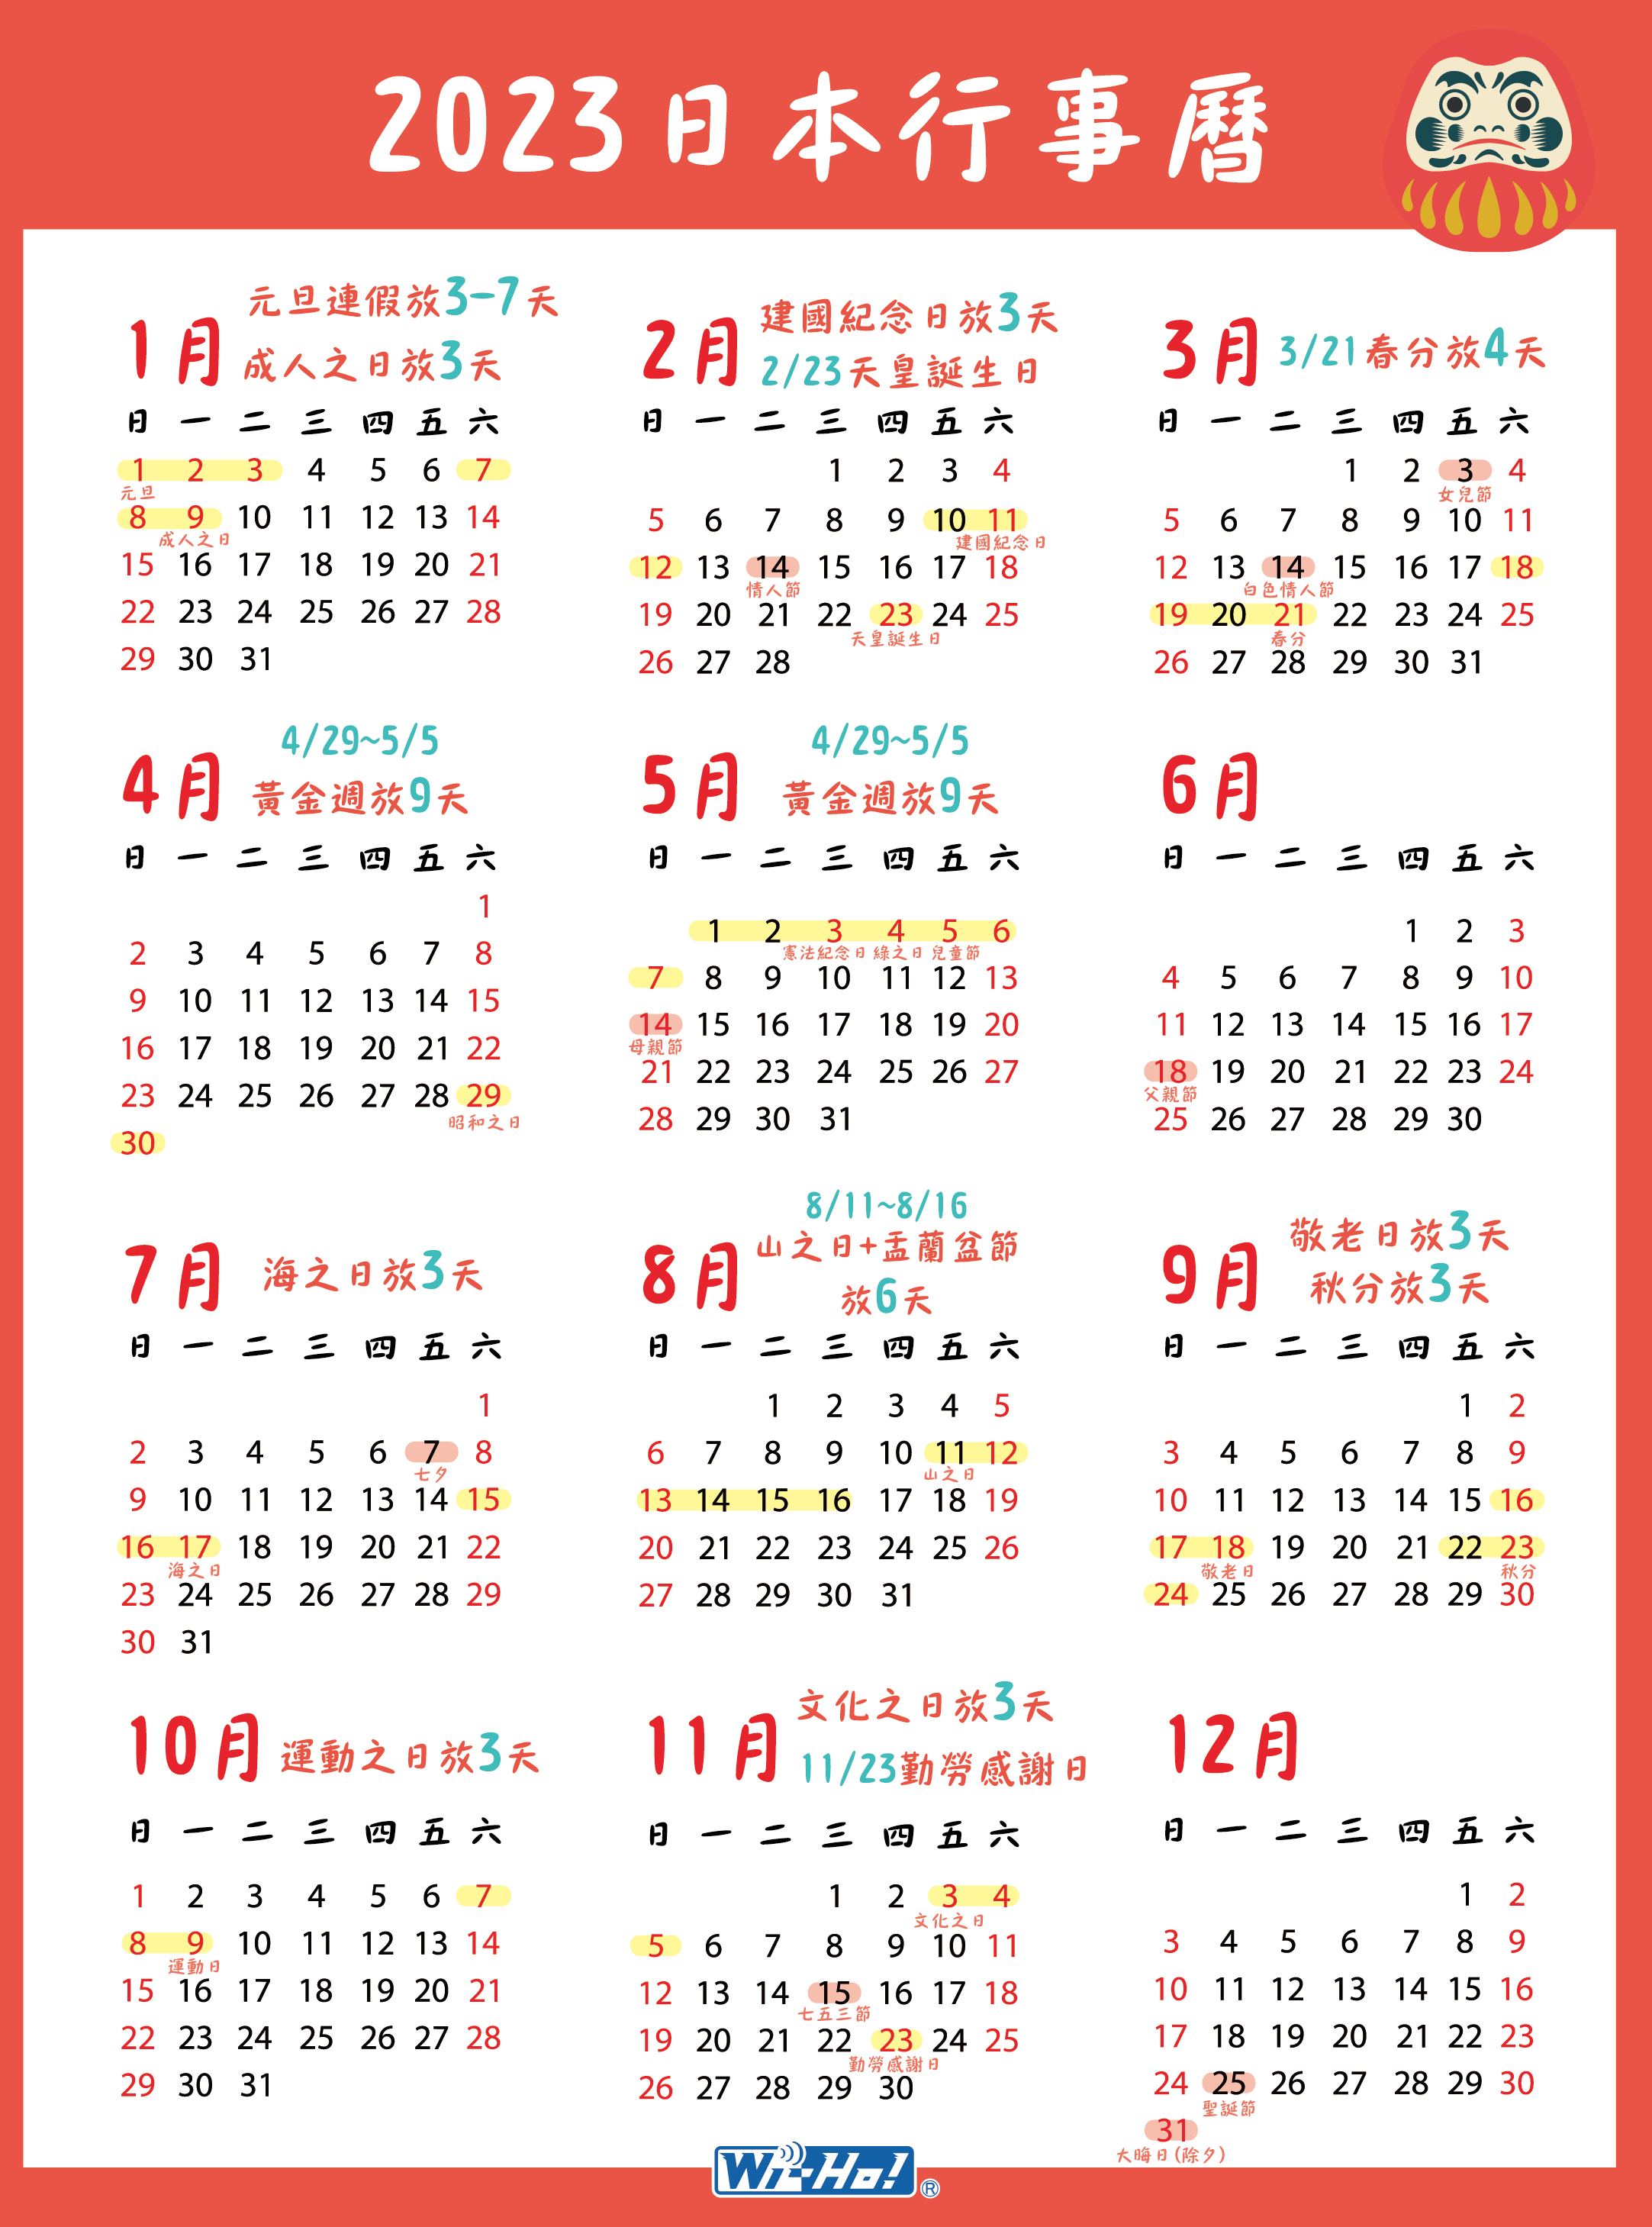 2023-2024連假行事曆：1圖秒懂過年/國定假日/補班超攻略